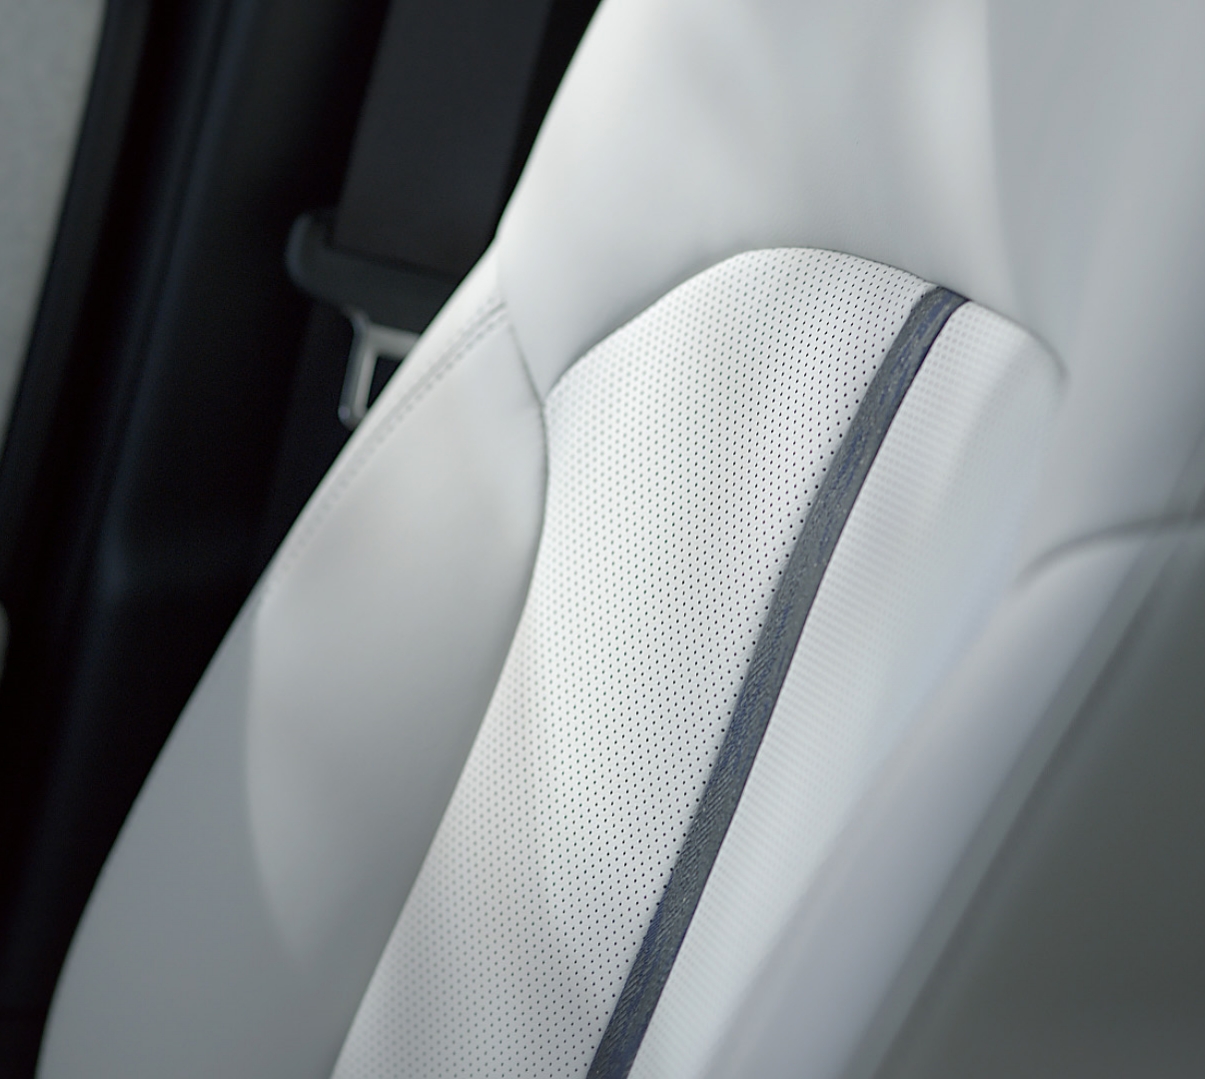 Forsæde i en Mazda CX-60 med 10-vejs elektrisk justering, sædevarme, ventilation